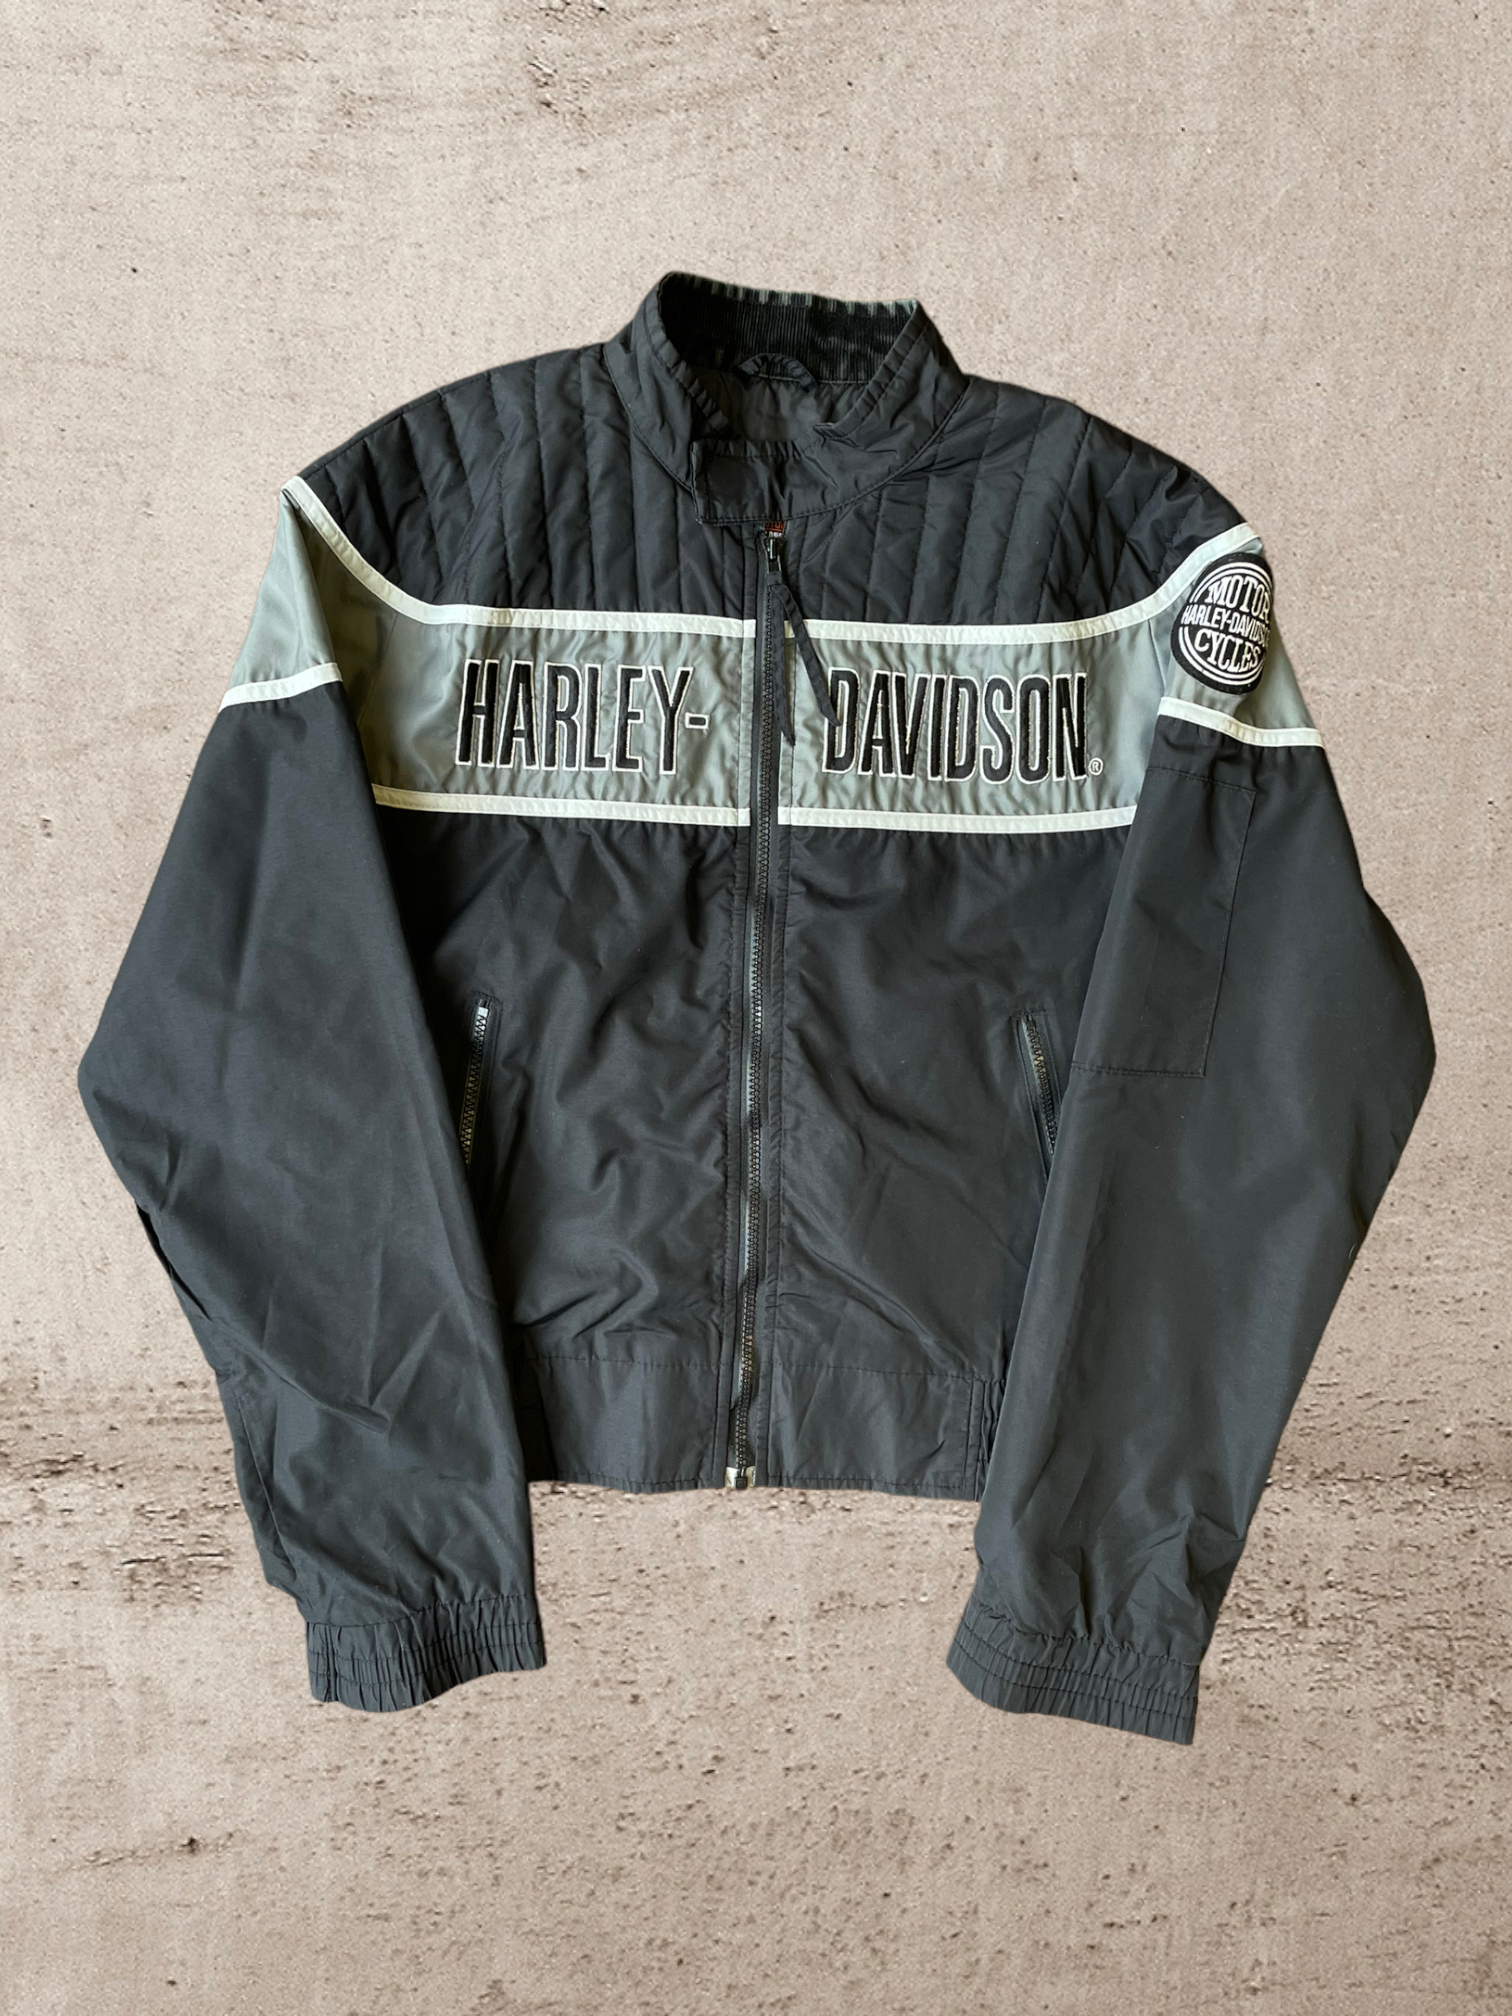 Vintage Harley Davidson Moto Racing Jacket - Medium/Large